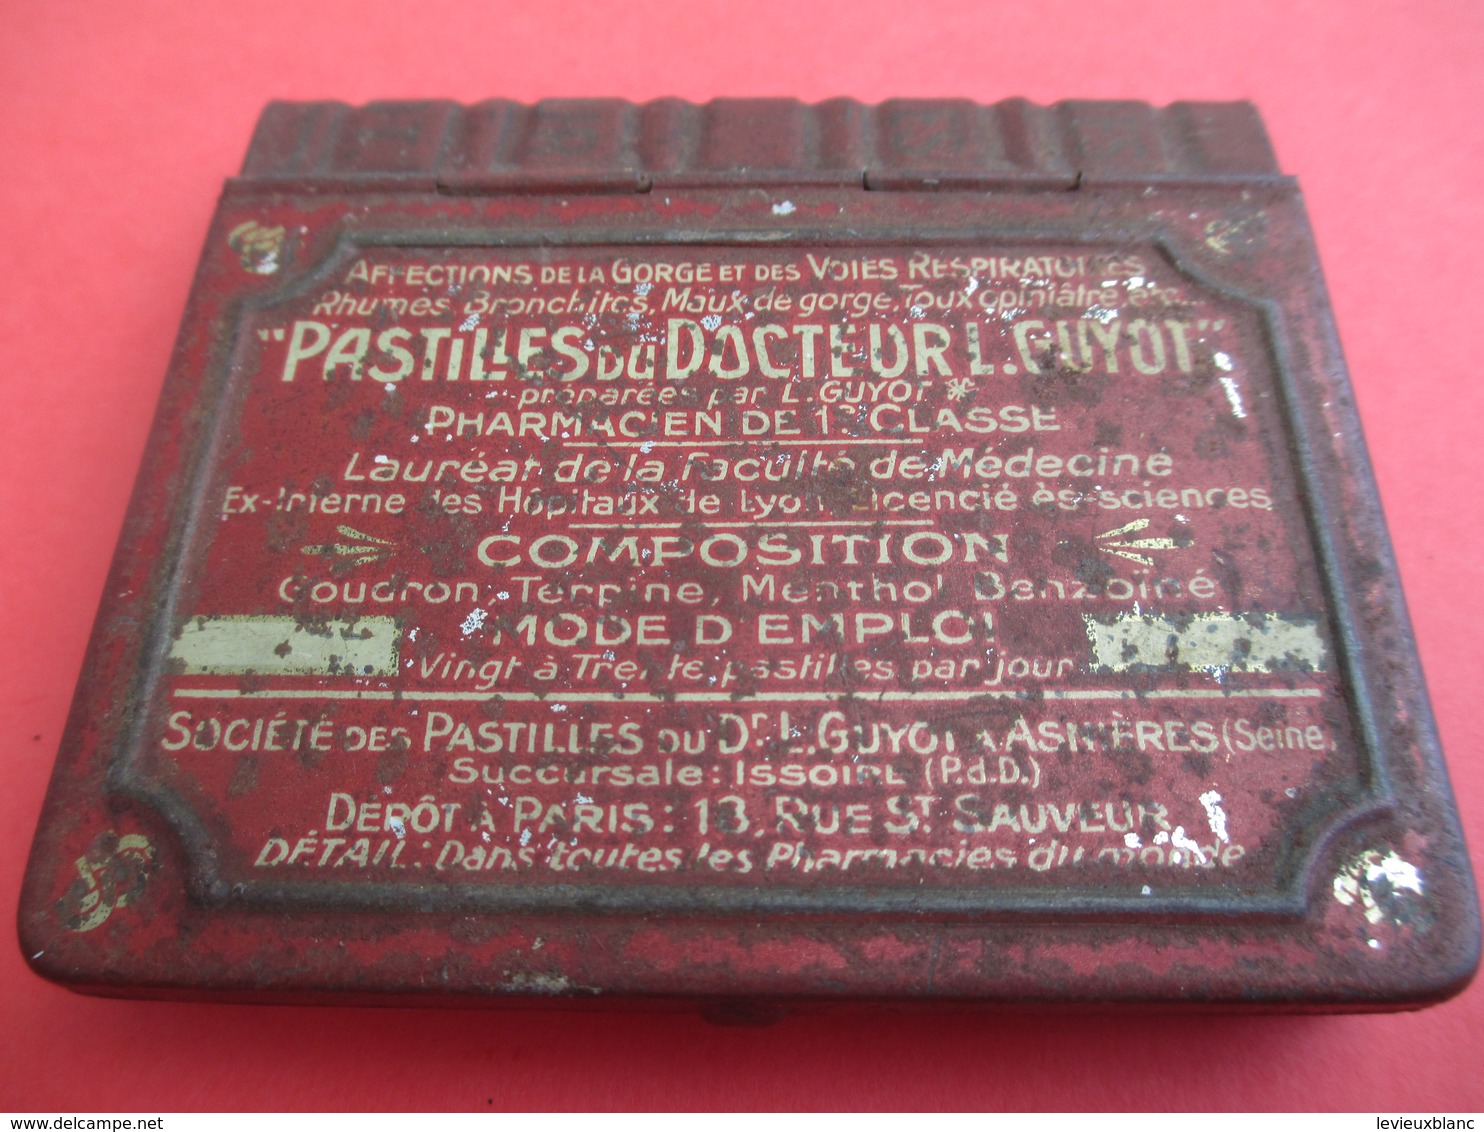 Boite Métallique Ancienne/Pastilles Du Dr GUYOT/Affections Gorge & Voies Respiratoires/ASNIERES/Vers 1900-1920 BFPP170 - Boxes